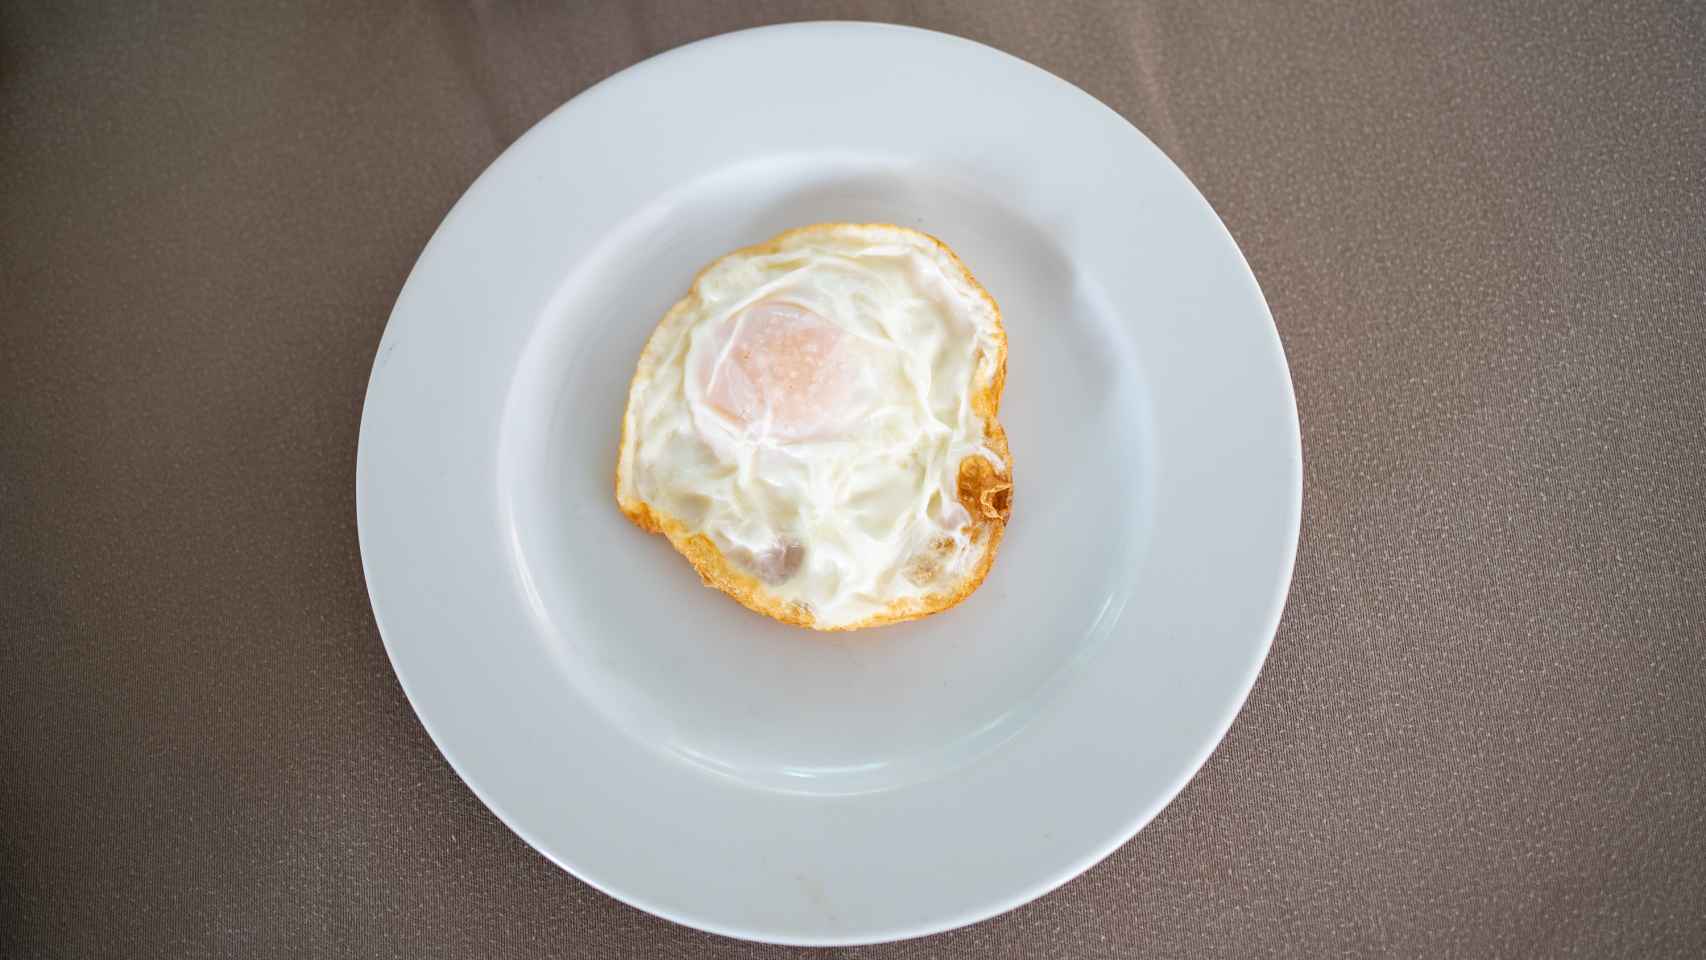 Vista superior del huevo frito de Alcampo antes de ser probado por el chef.